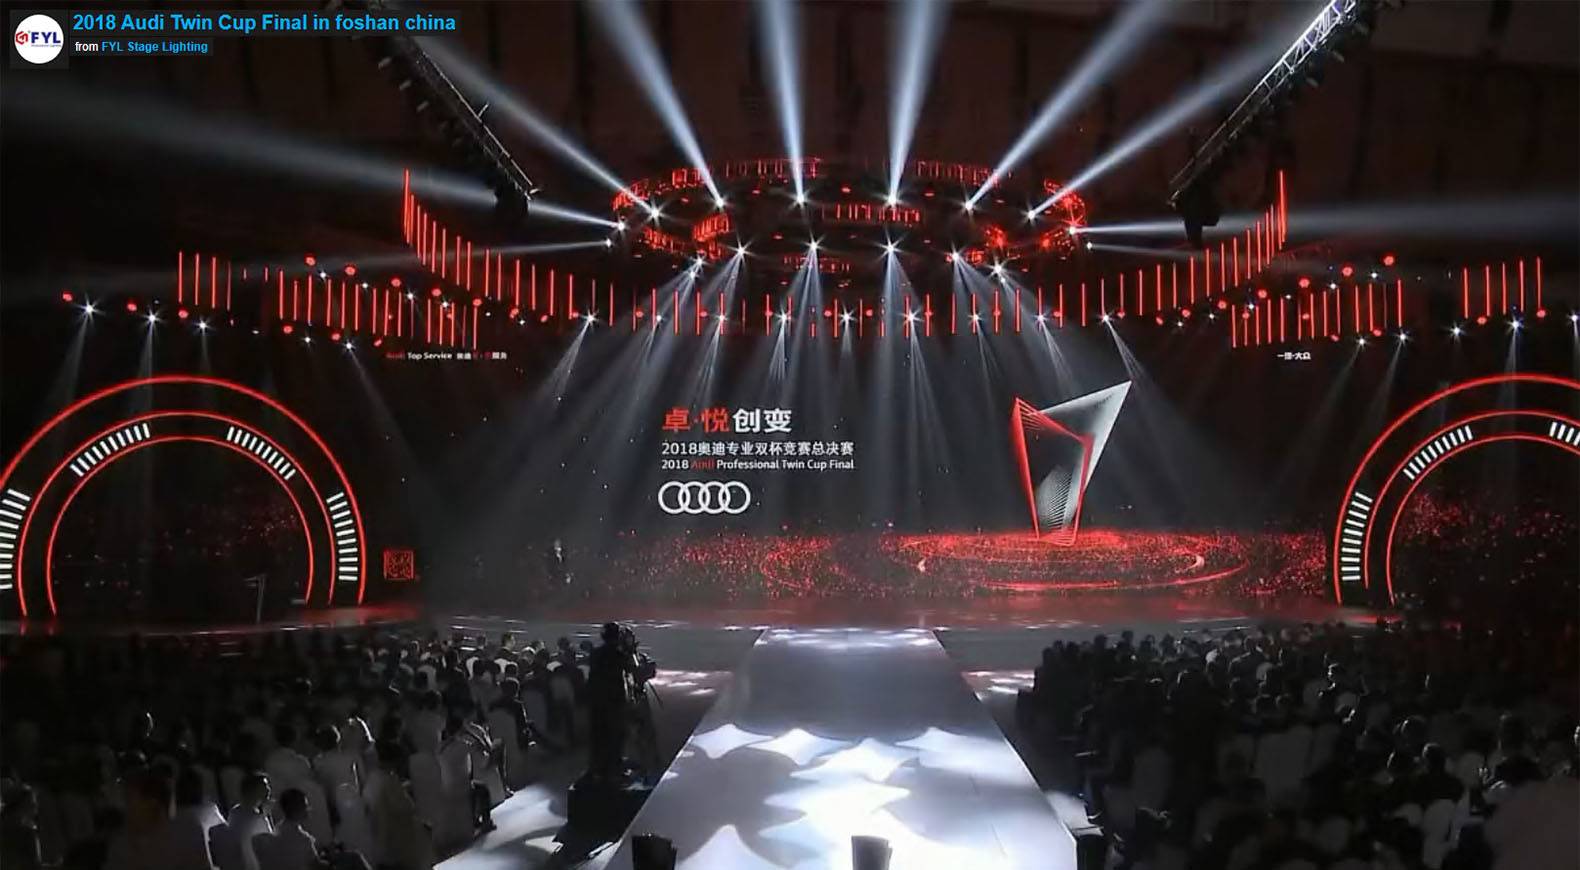 2018 жылғы Қытайдың Фошан қаласында Audi Twin Cup финалы